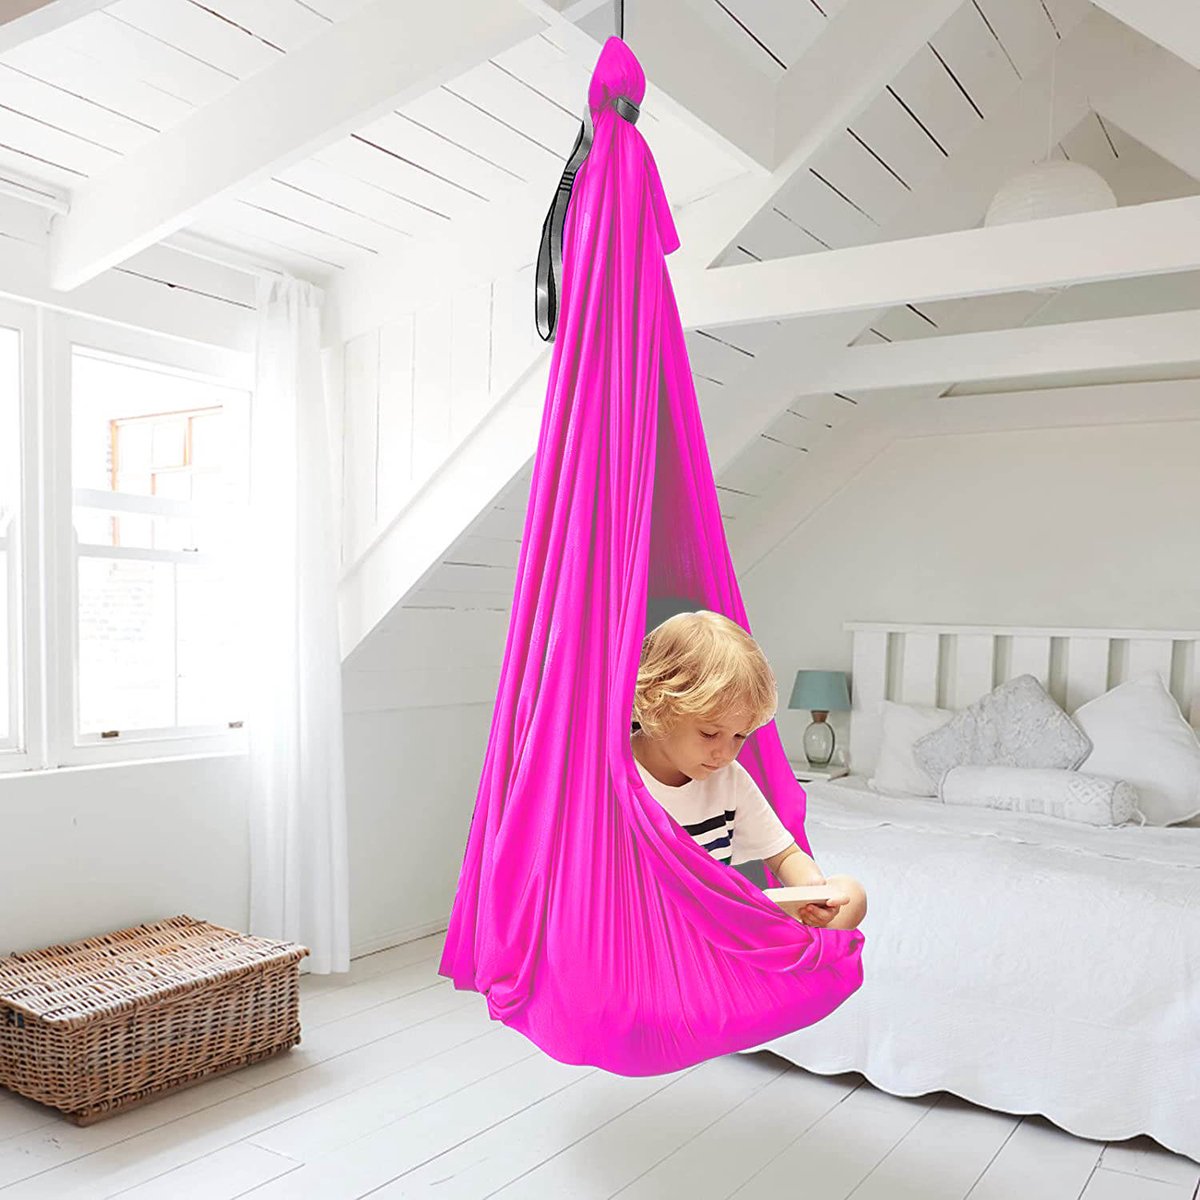 Hangmat - Sensorische Hangschommel Voor Kinderen - Indoor & Outdoor - Schommel - 1 Meter - Roze